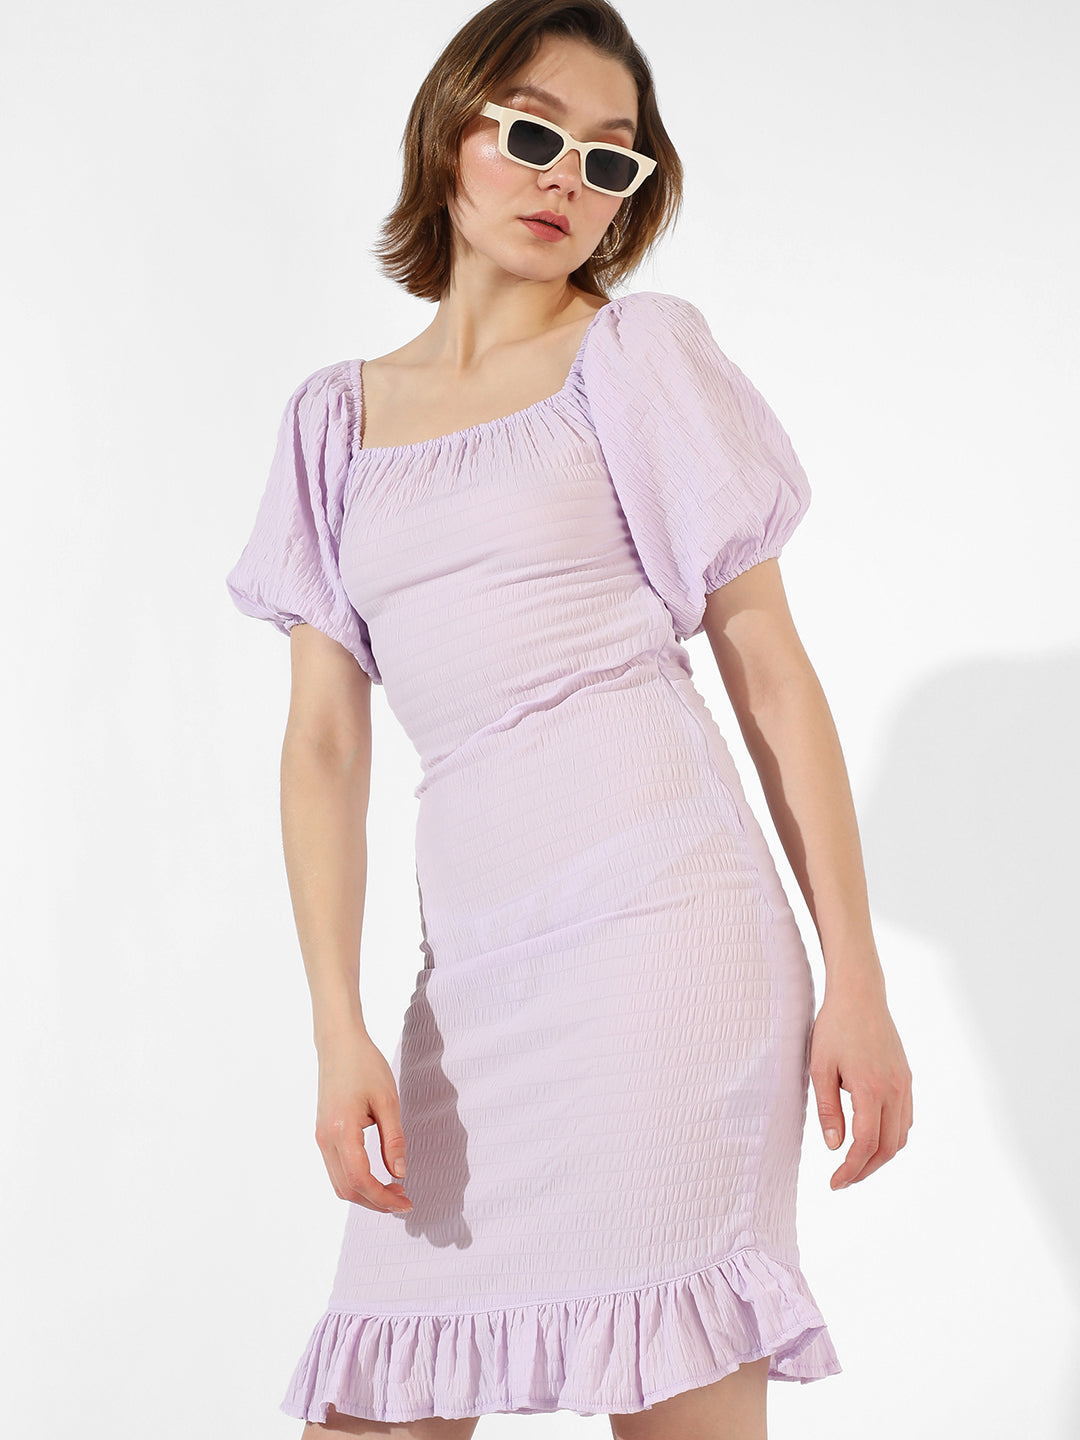 Solid Lavender Dress